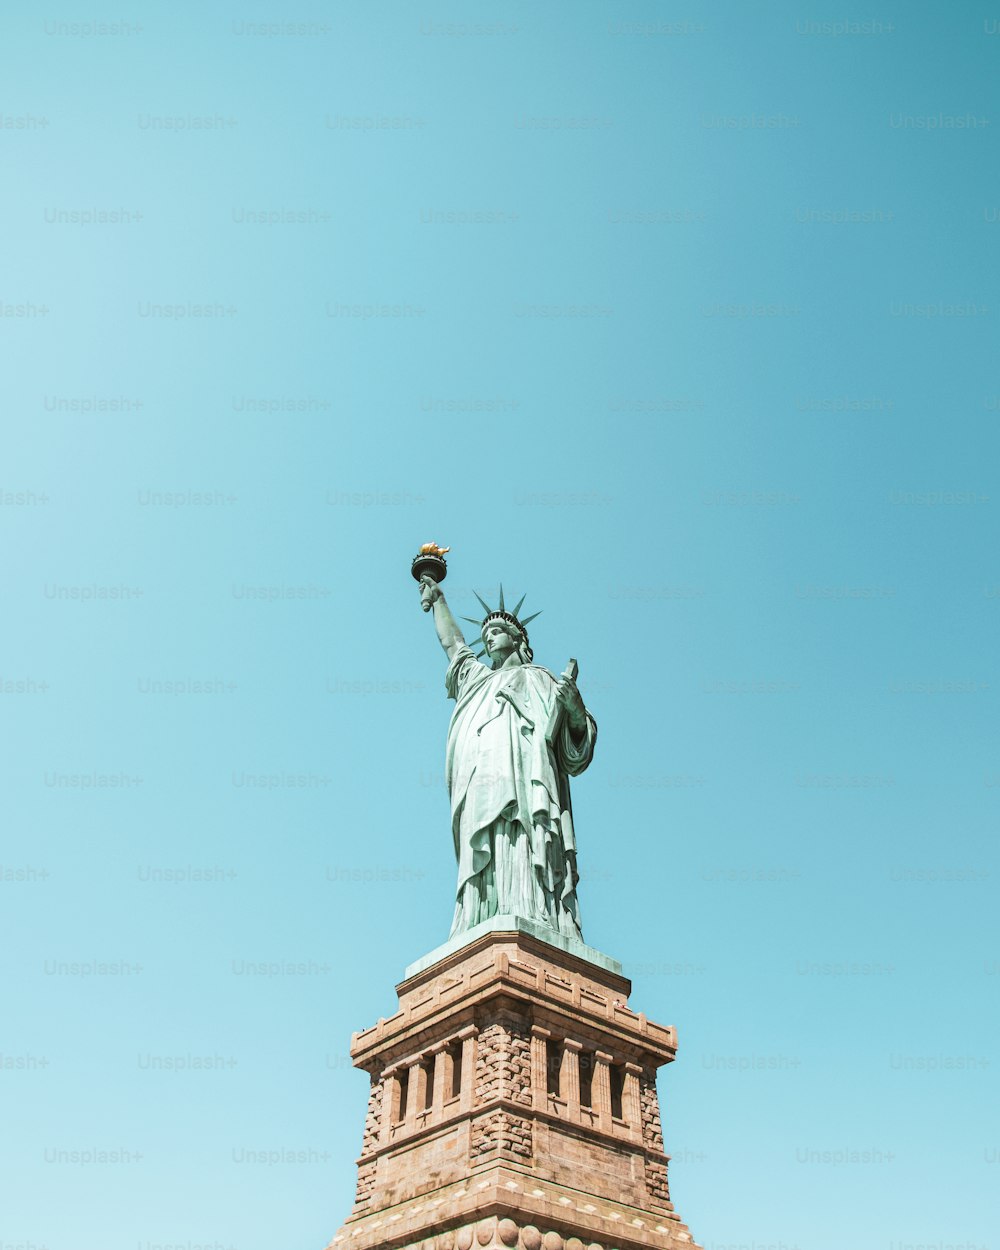 La Statue de la Liberté est représentée sur un ciel bleu